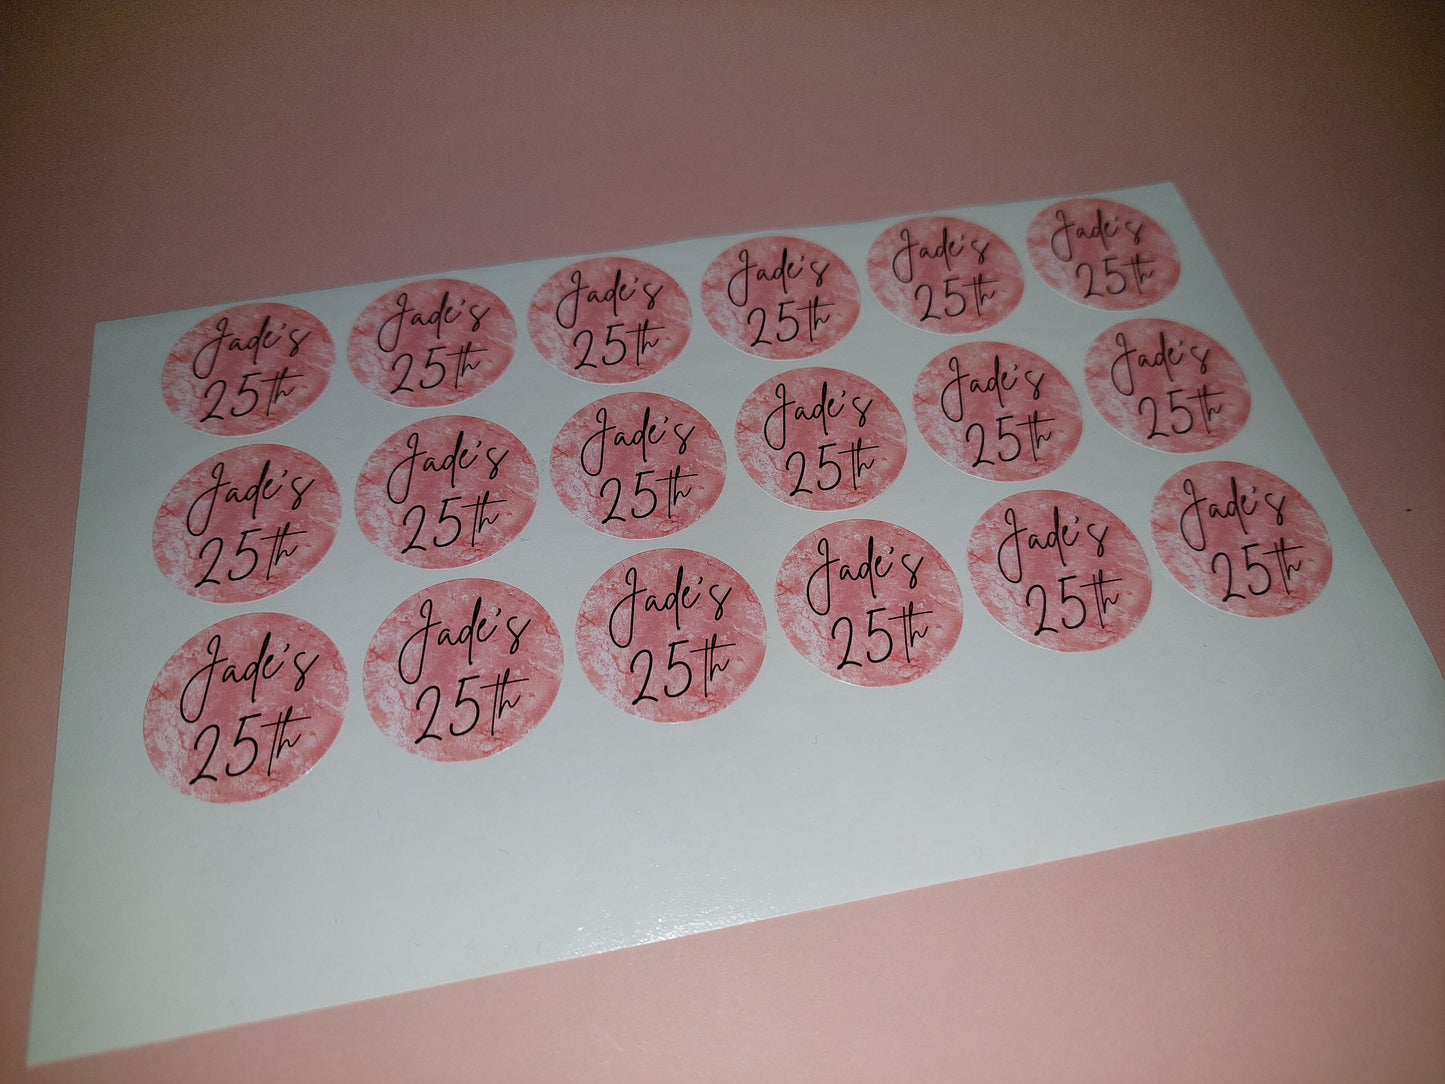 18 x Blush Pink Stickers | Jade's 25th | SALE ITEM